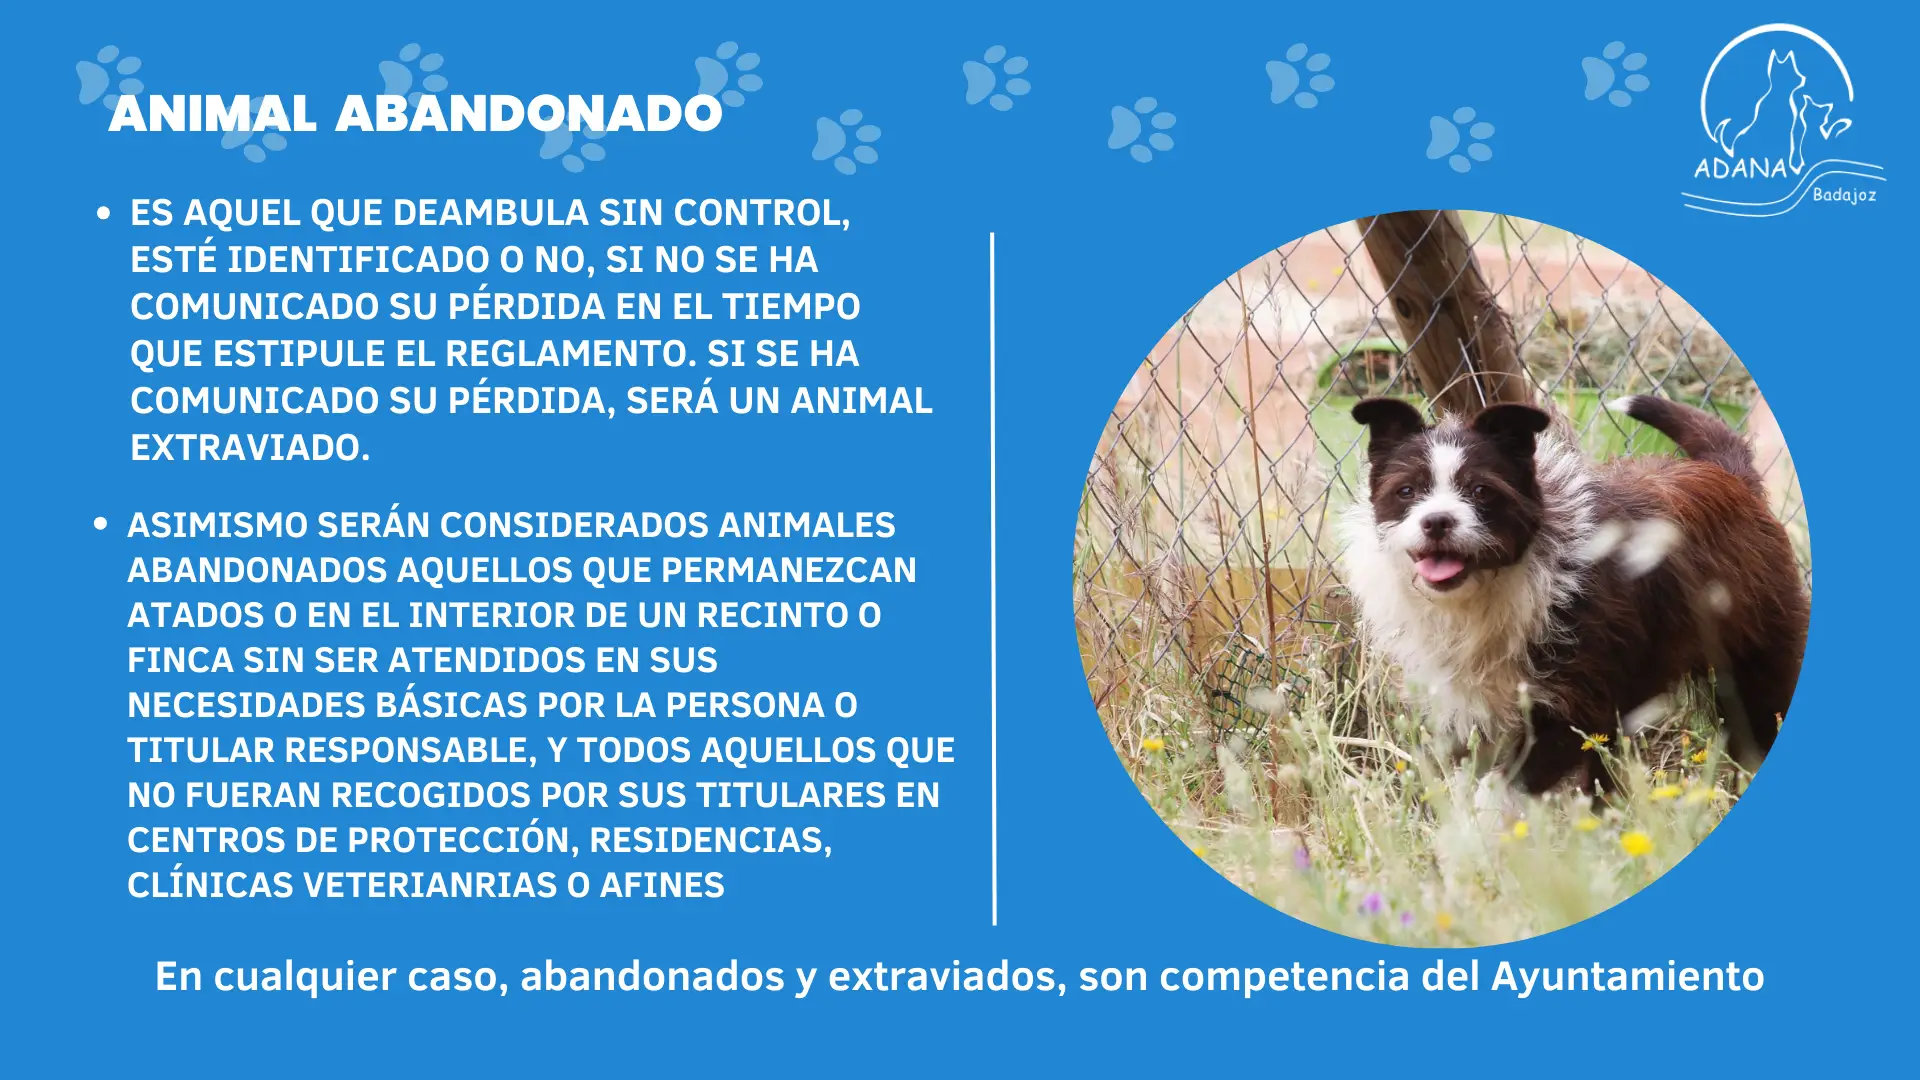 Nueva Ley de Proteccion Animal Asociacion Adana Badajoz